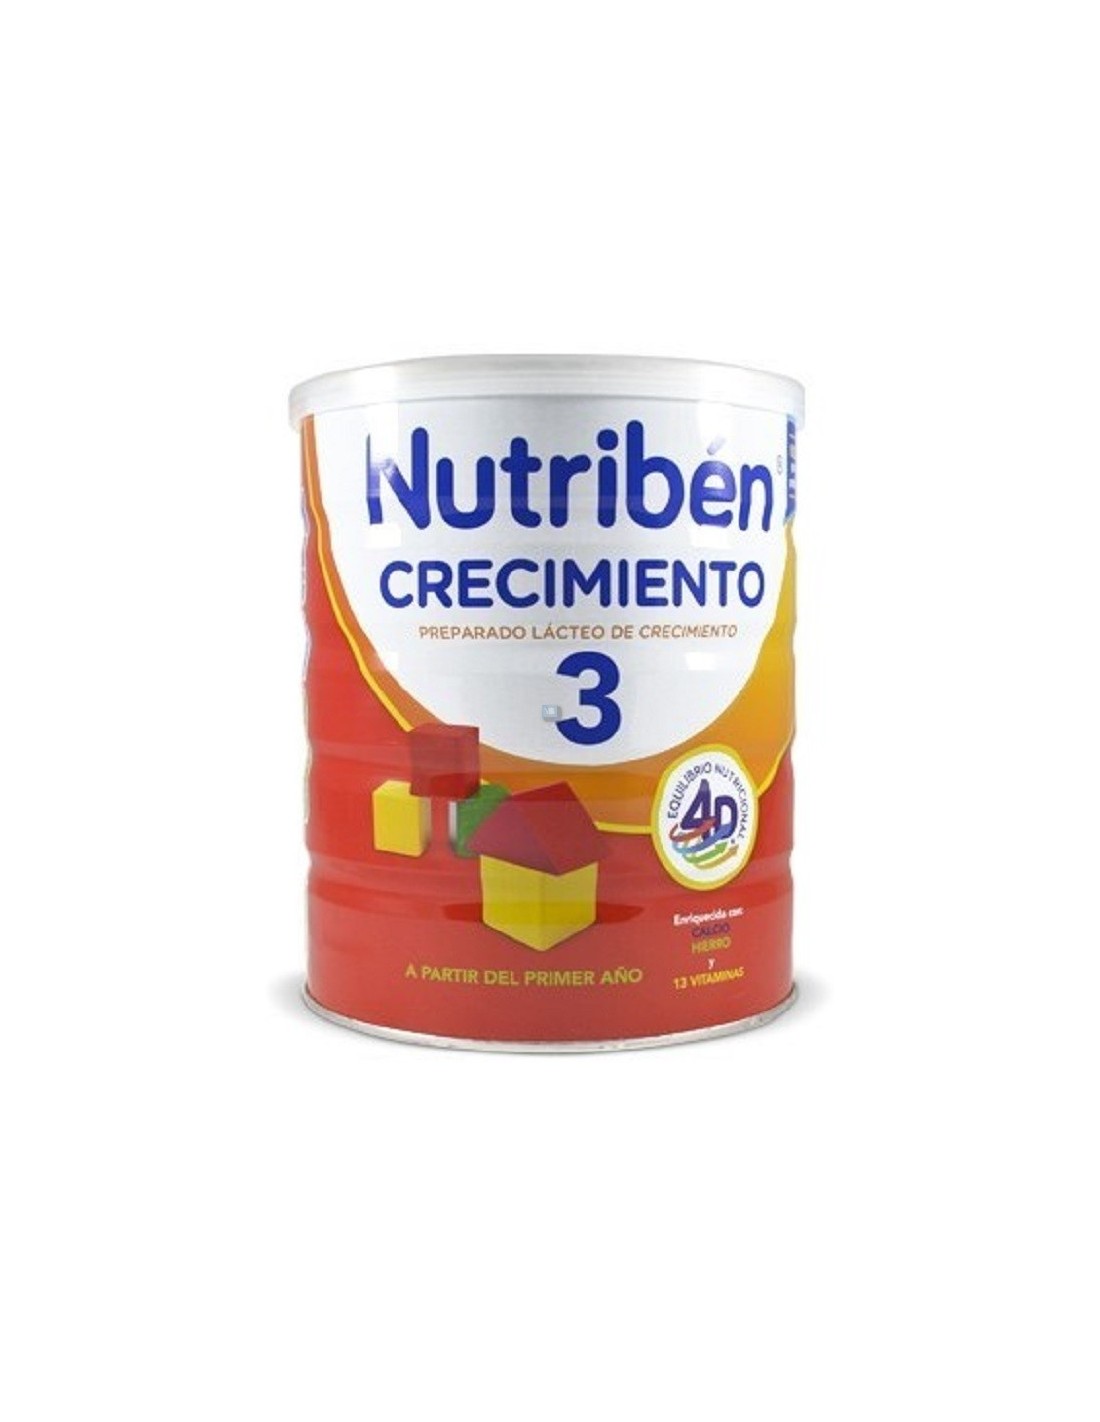 Buy Nutriben Crecimiento 800 G. Deals on Nutriben brand. Buy Now!!